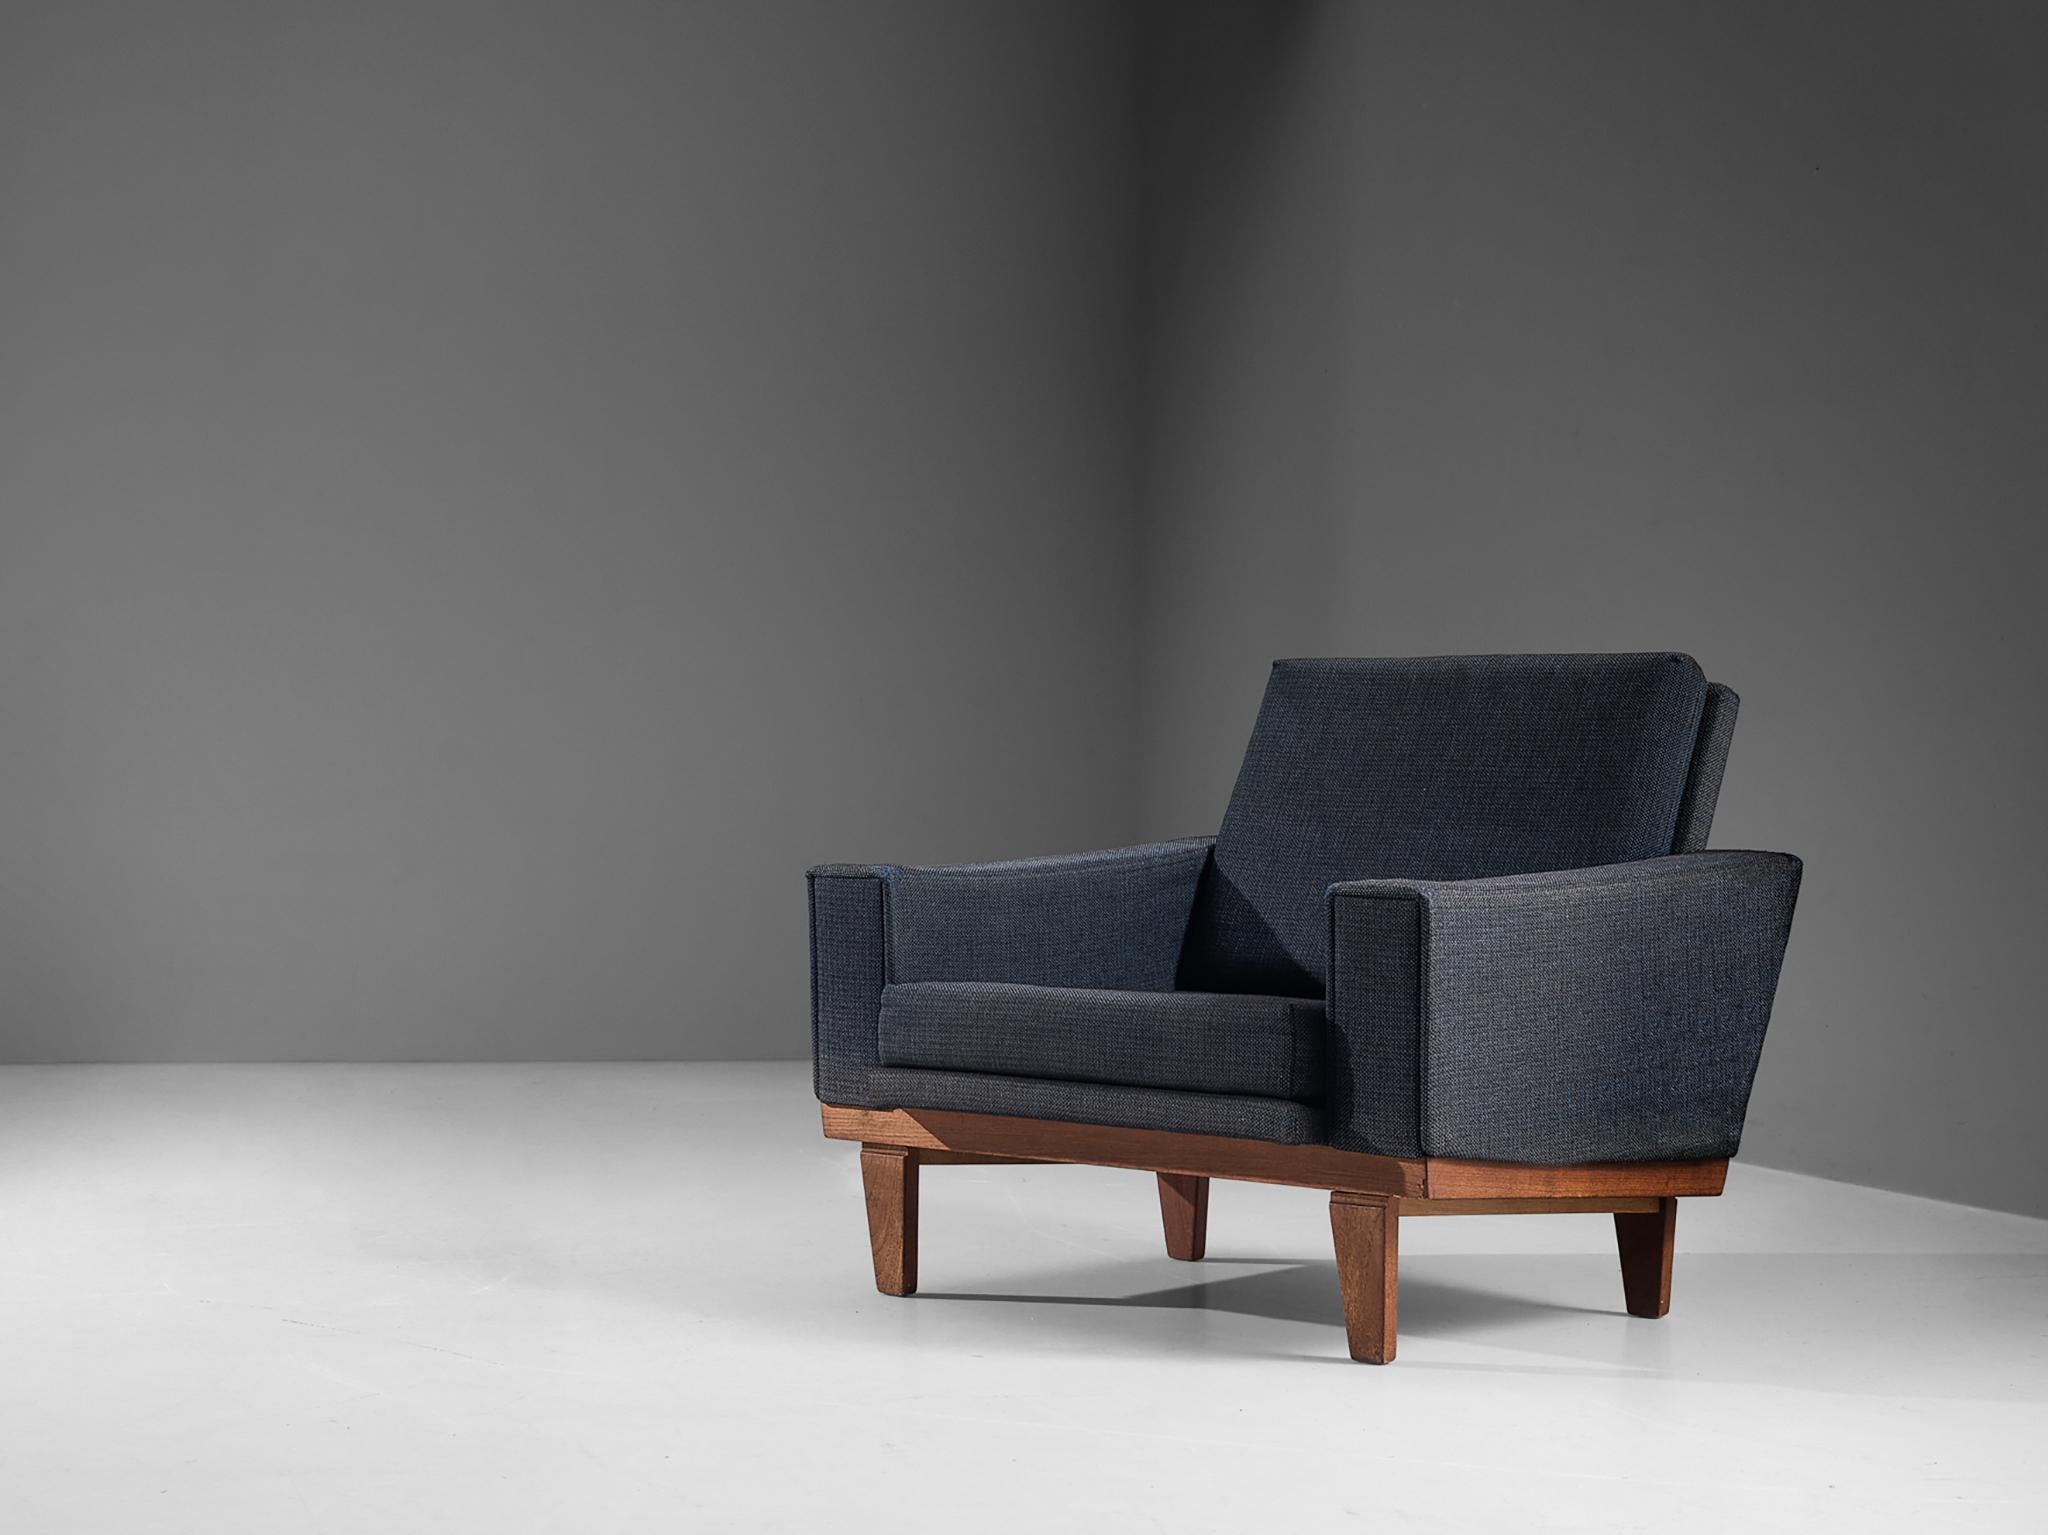 Loungesessel, graublauer Stoff, Teakholz, Dänemark, 1960er Jahre.

Dieser Sessel ist mit einem dicken graublauen Stoff bezogen. Sitz und Rückenlehne sind glatt gepolstert und ergänzen das Teakholzgestell wunderbar. Die rechteckigen Beine sind leicht